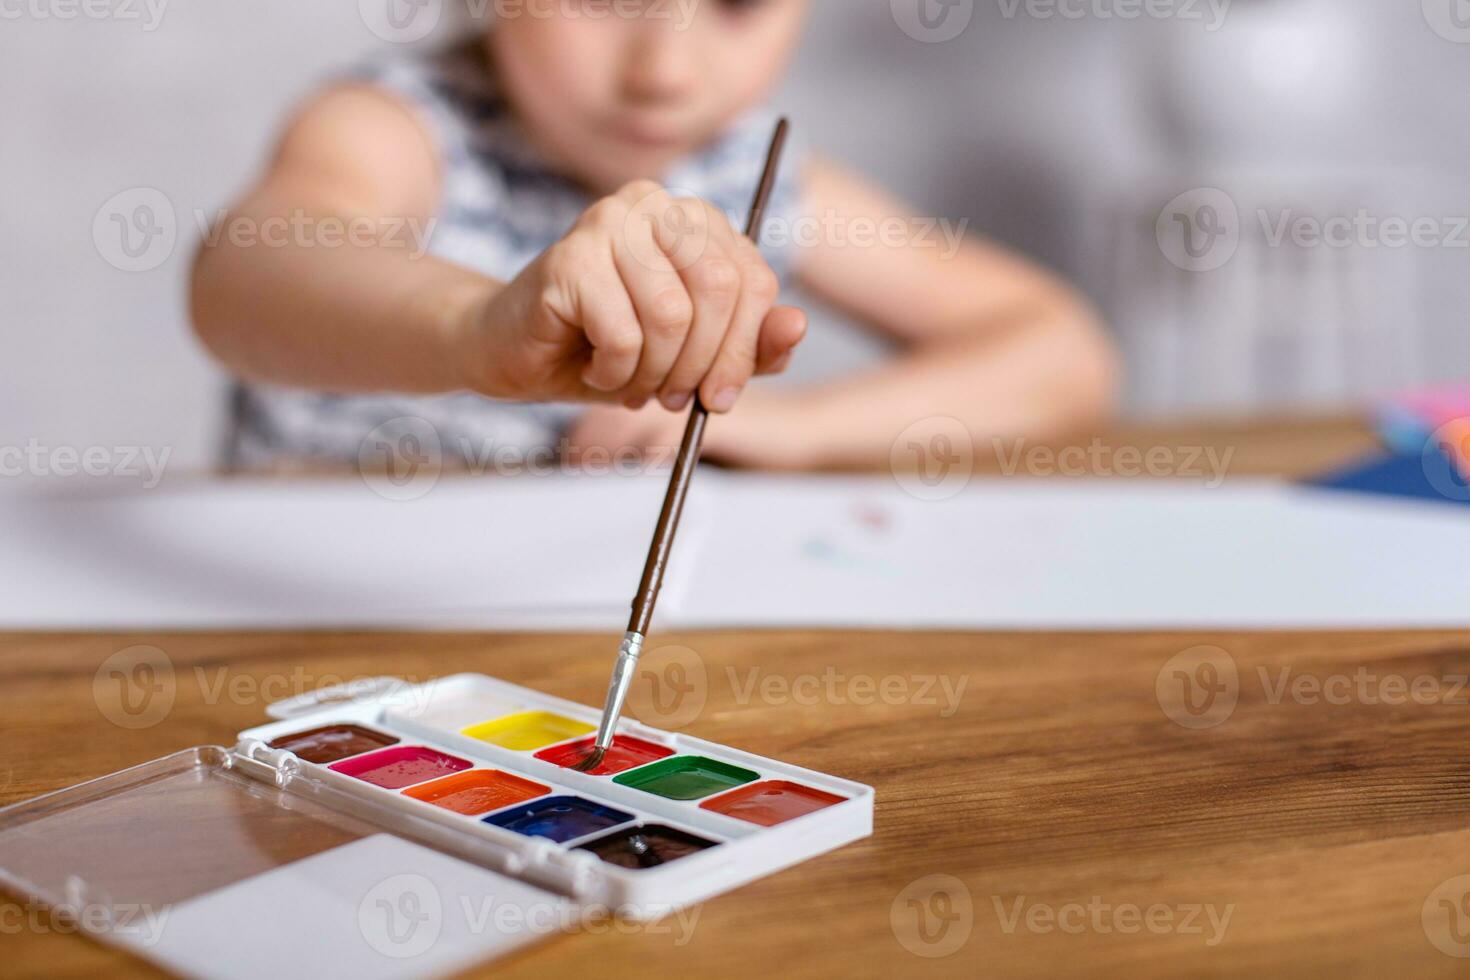 utbildning, skola, konst och målning begrepp - liten flicka drar målarfärger foto